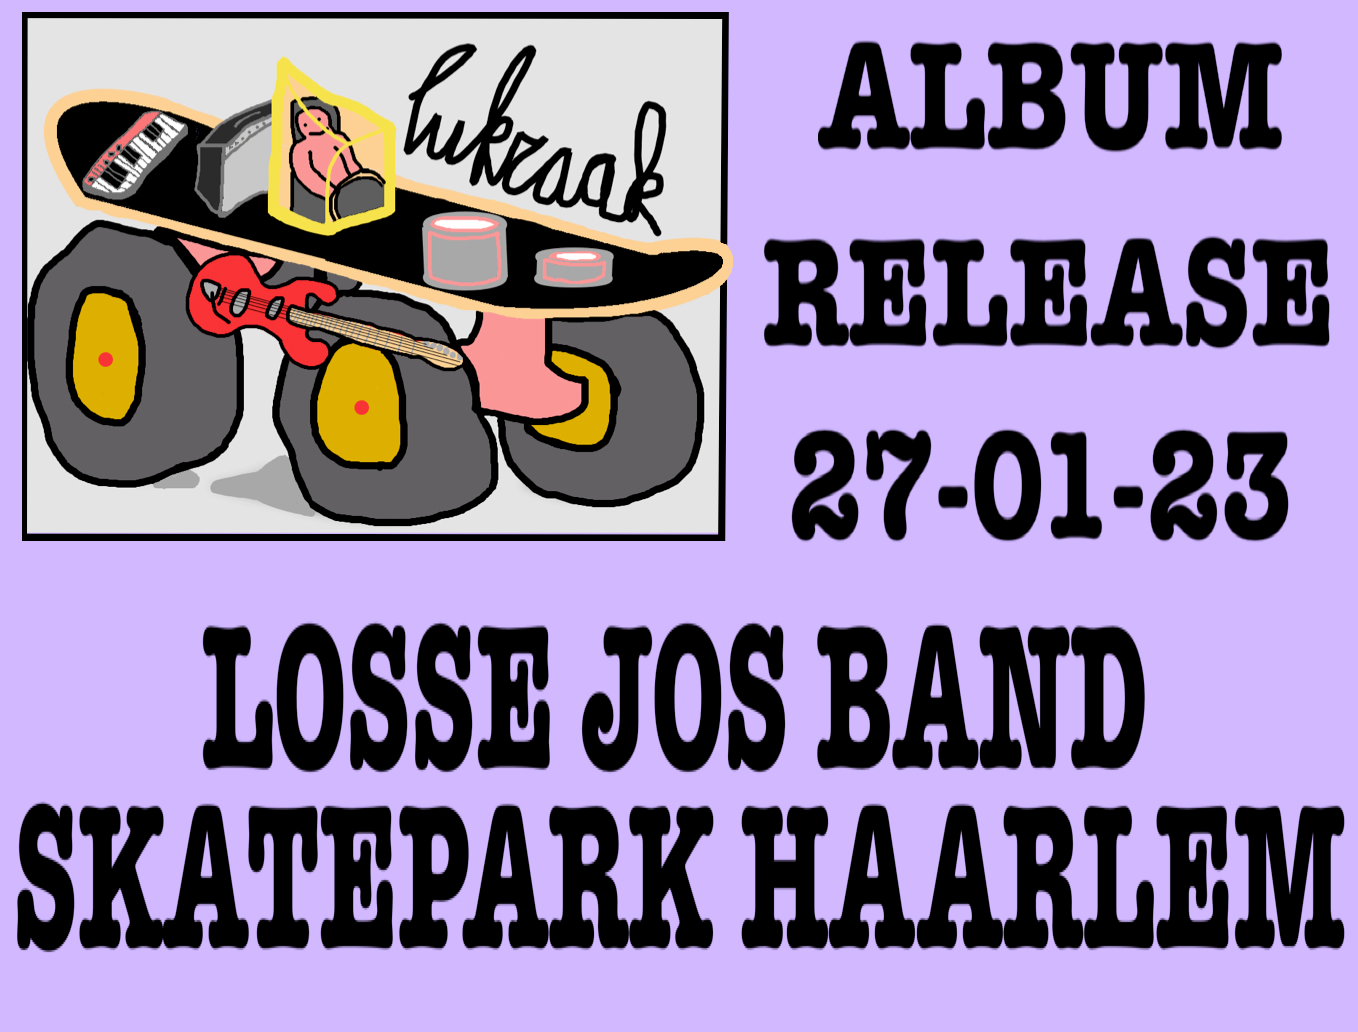 Losse Jos Band in Skatepark Haarlem